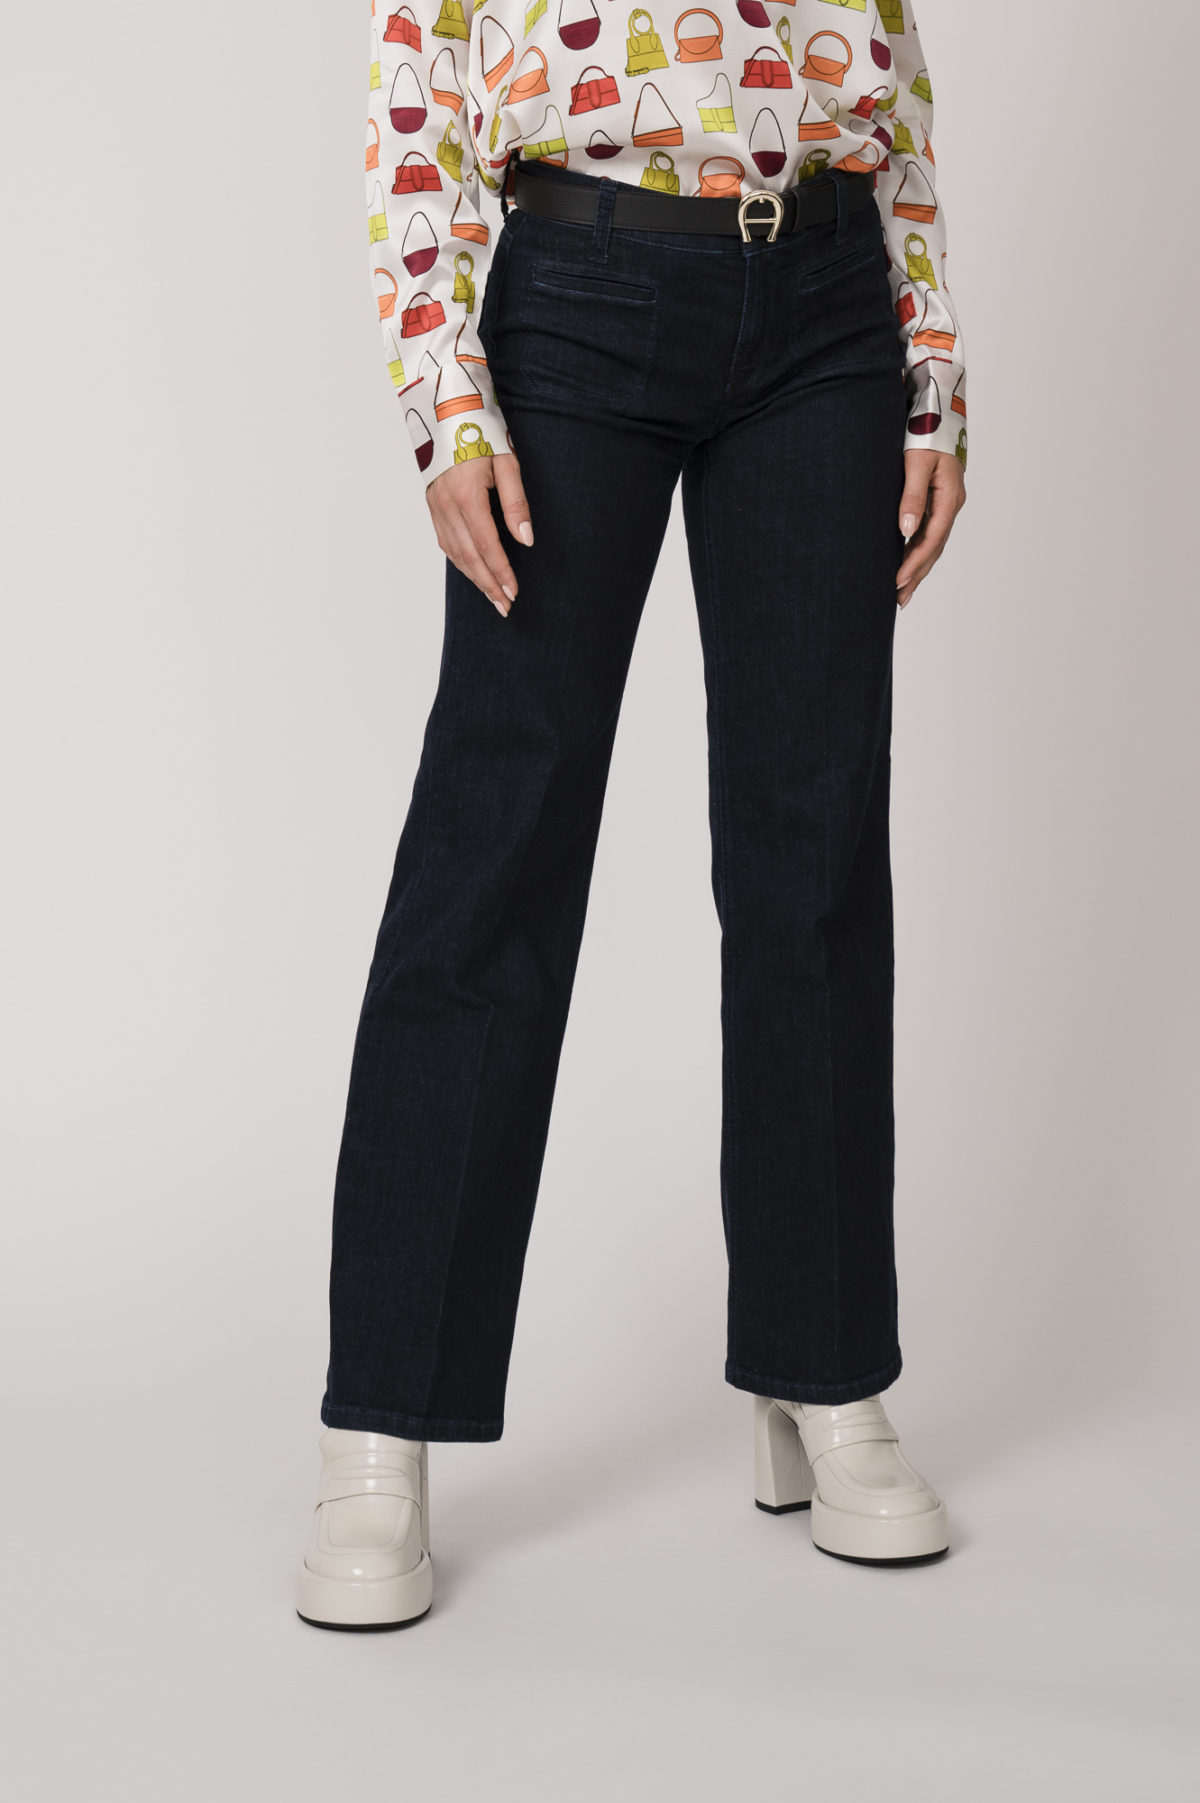 Jeans der Marke Cambio, Gürtel der Marke Aigner